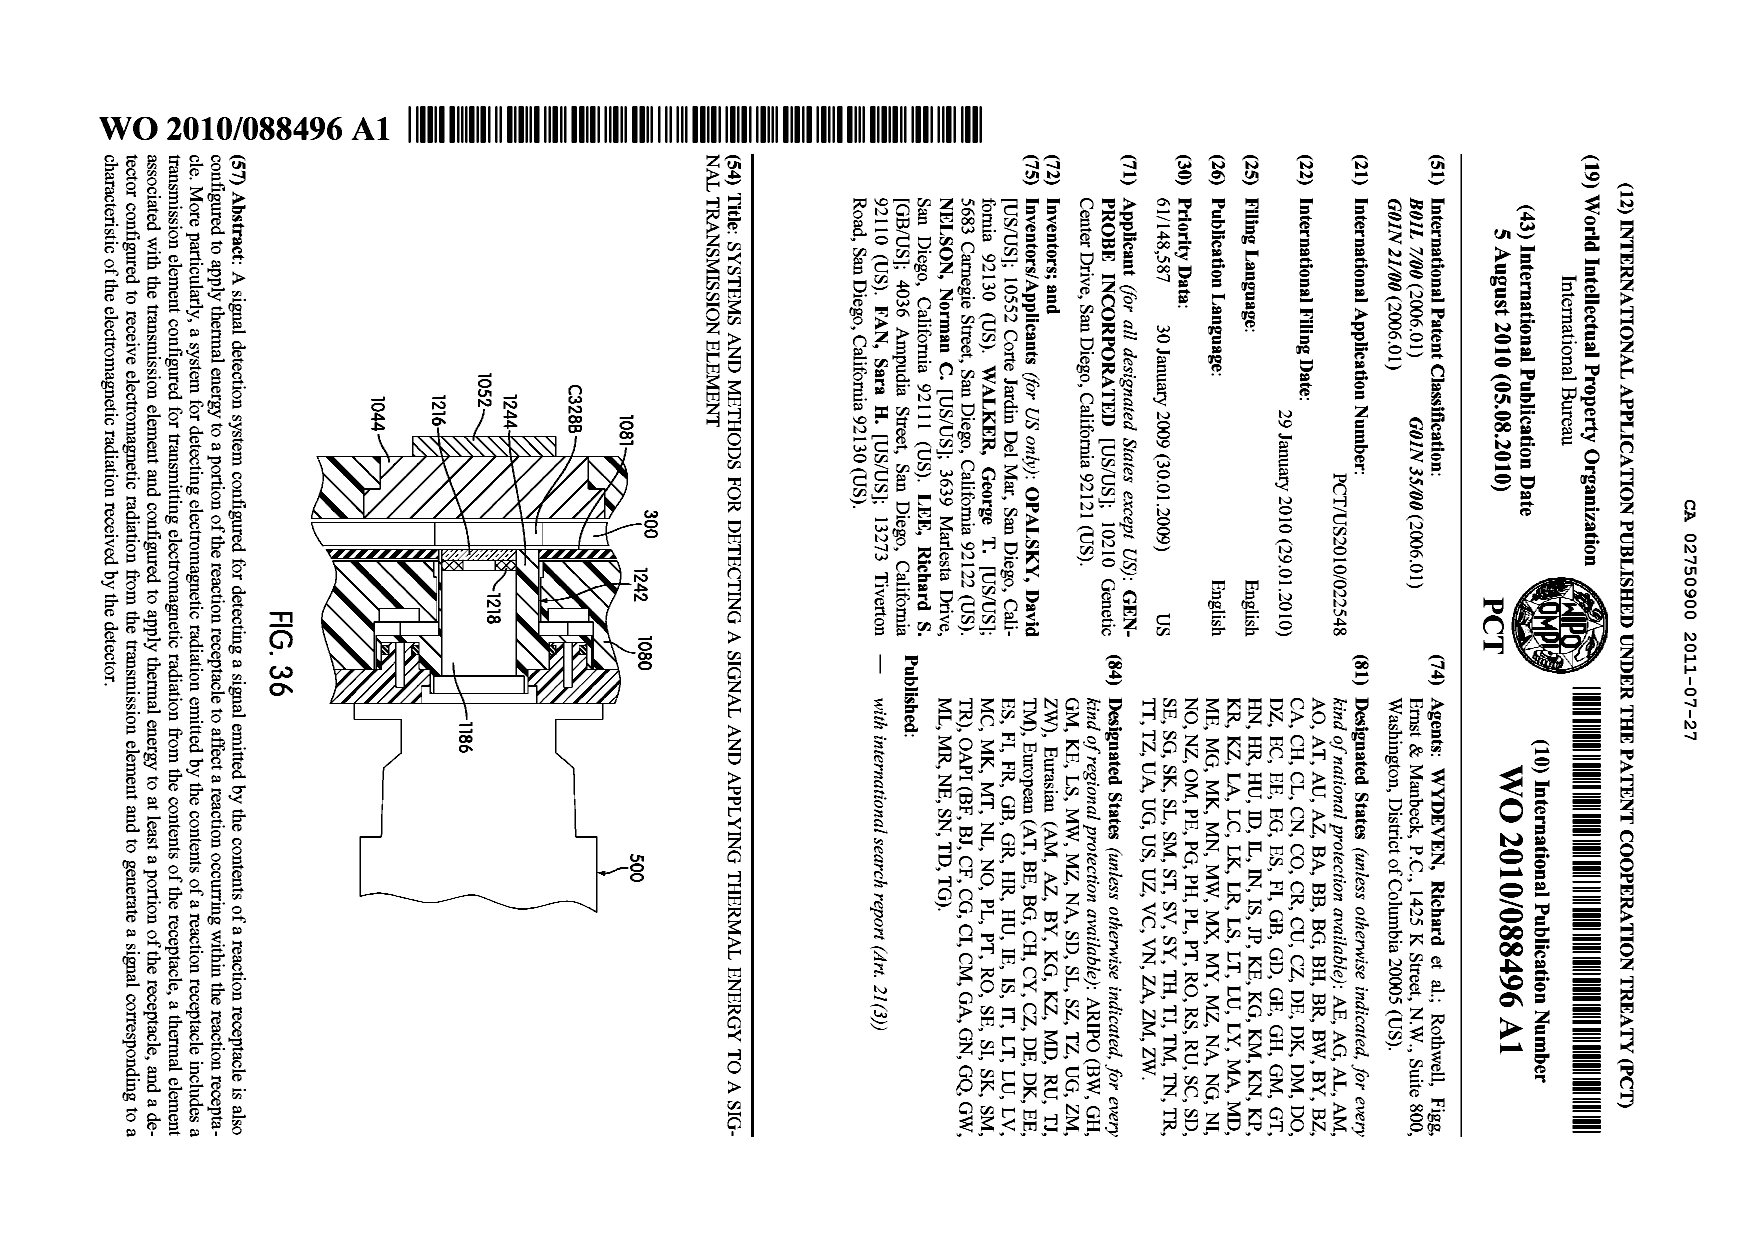 Document de brevet canadien 2750900. Abrégé 20101227. Image 1 de 1